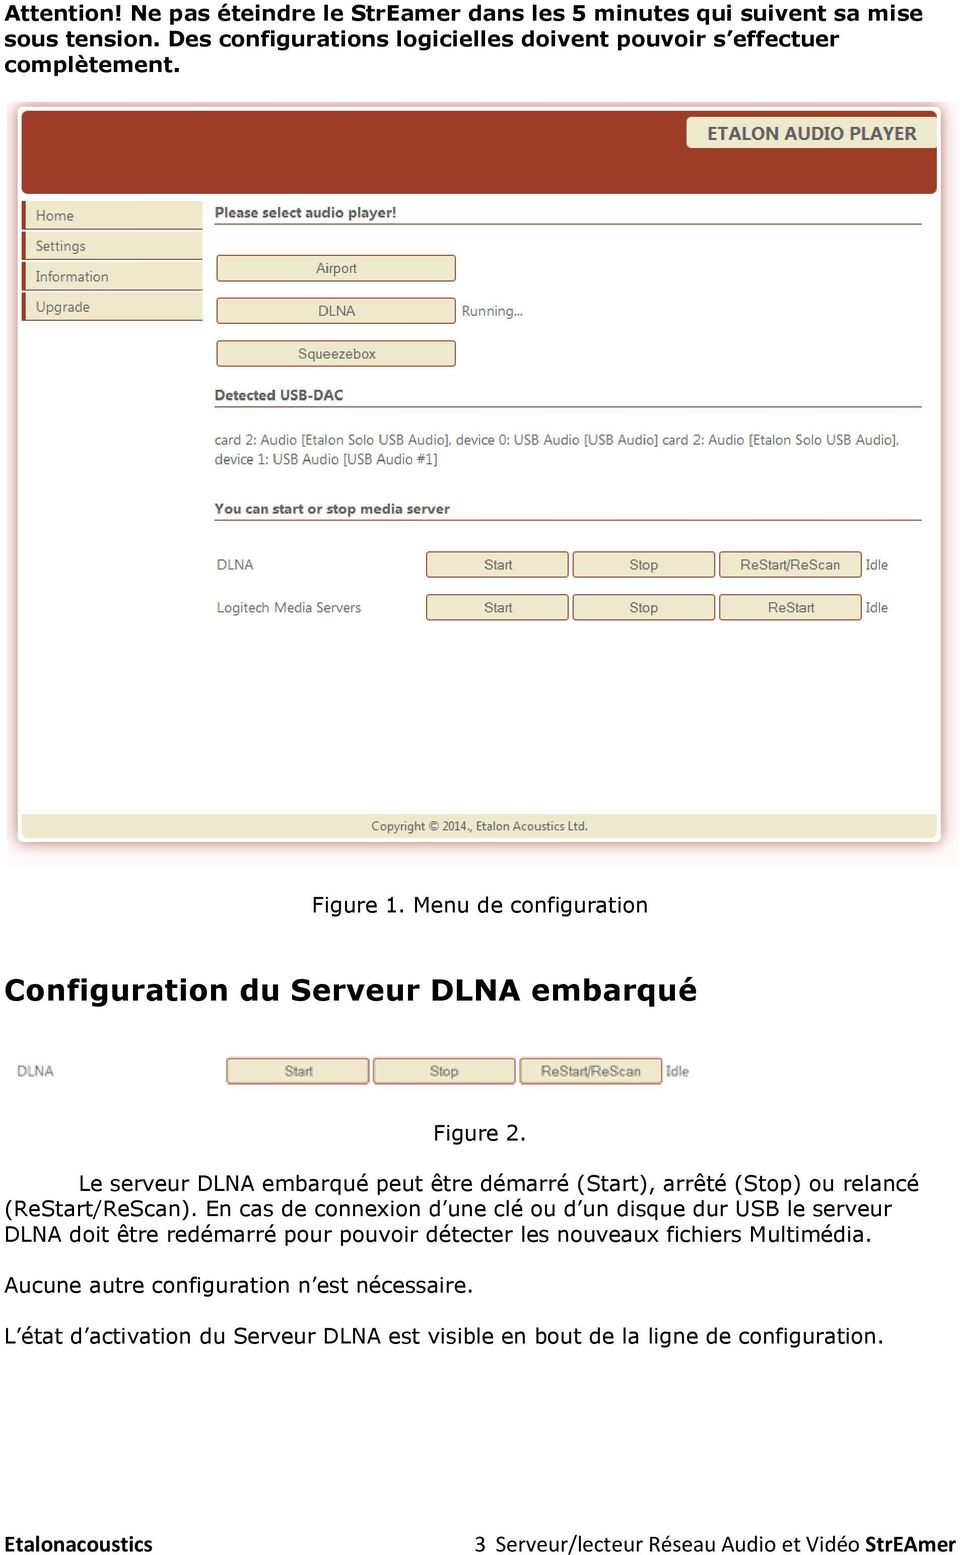 Le serveur DLNA embarqué peut être démarré (Start), arrêté (Stop) ou relancé (ReStart/ReScan).